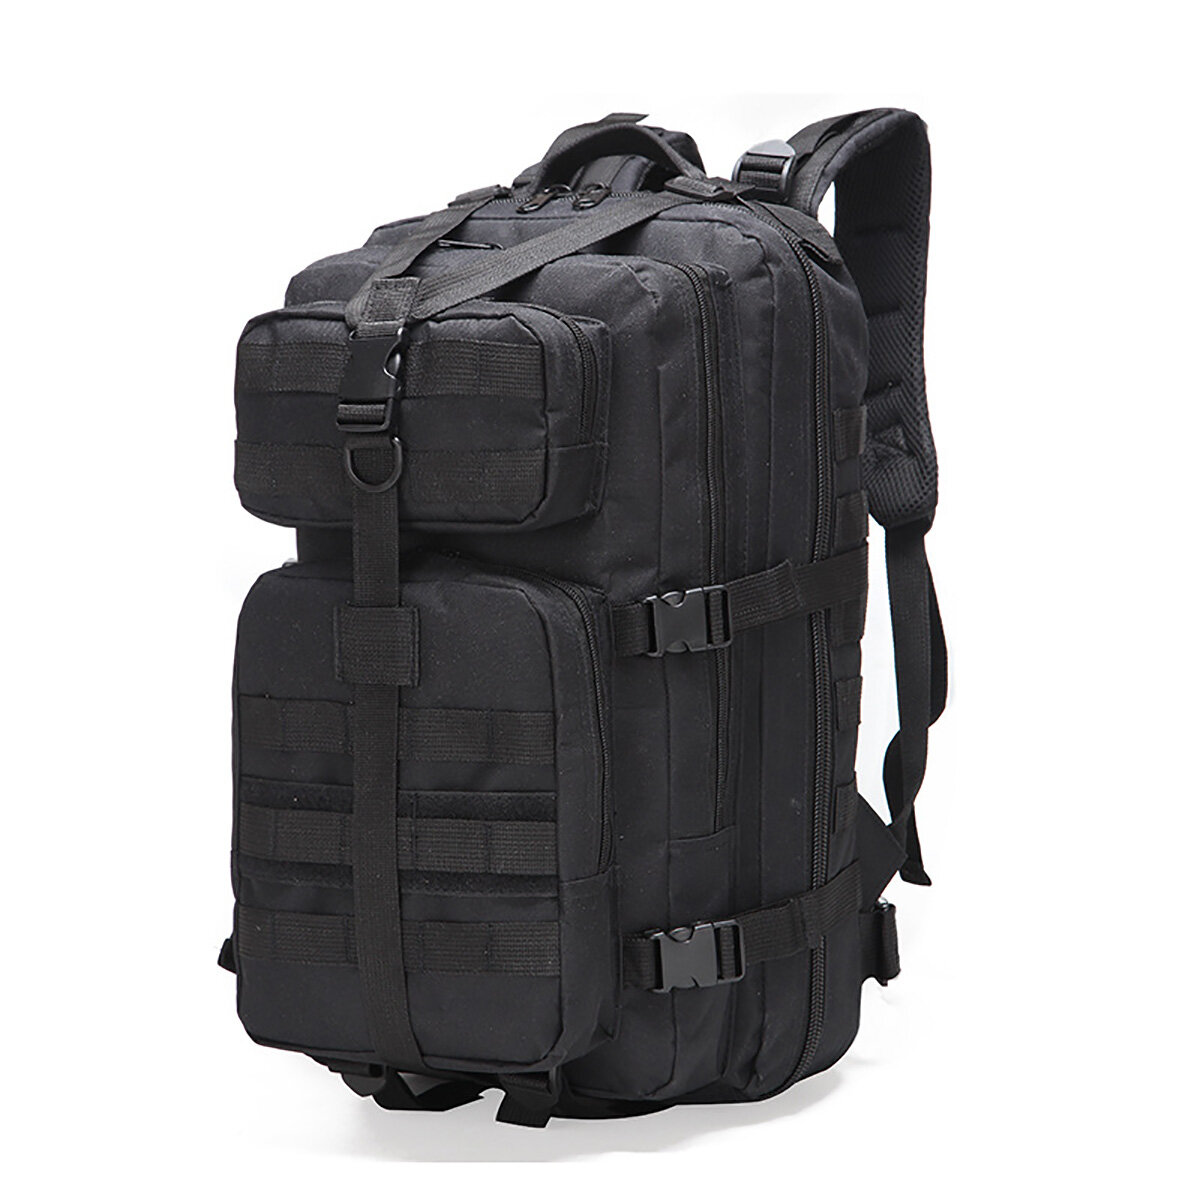 Рюкзак водонепроницаемый 35 литров для мужчин, тактическая сумка на плечо для отдыха на природе, путешествий, походов и альпинизма.